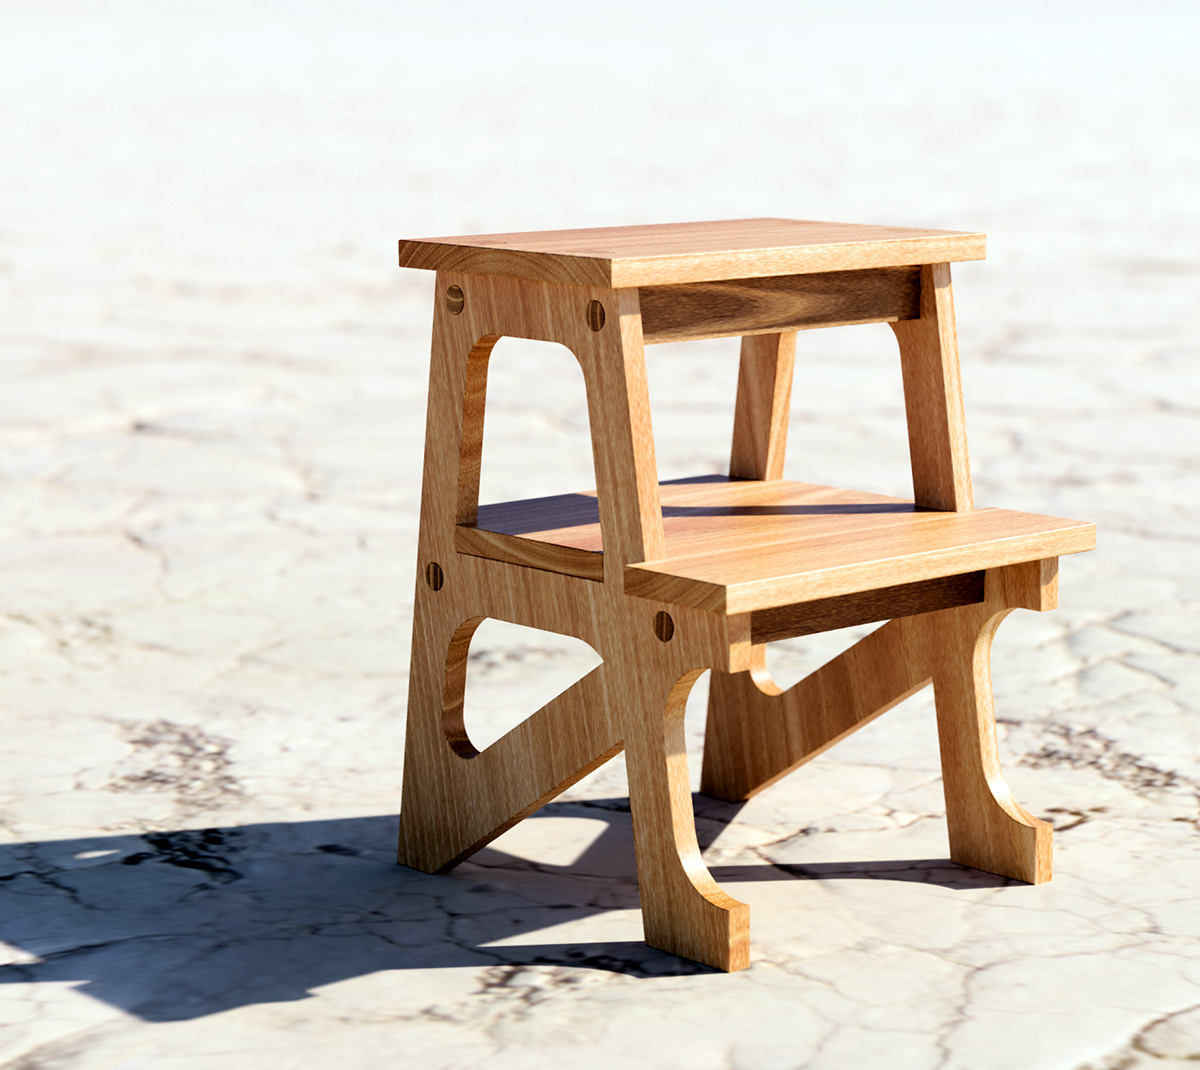 Ampersand stool on dry salt bed